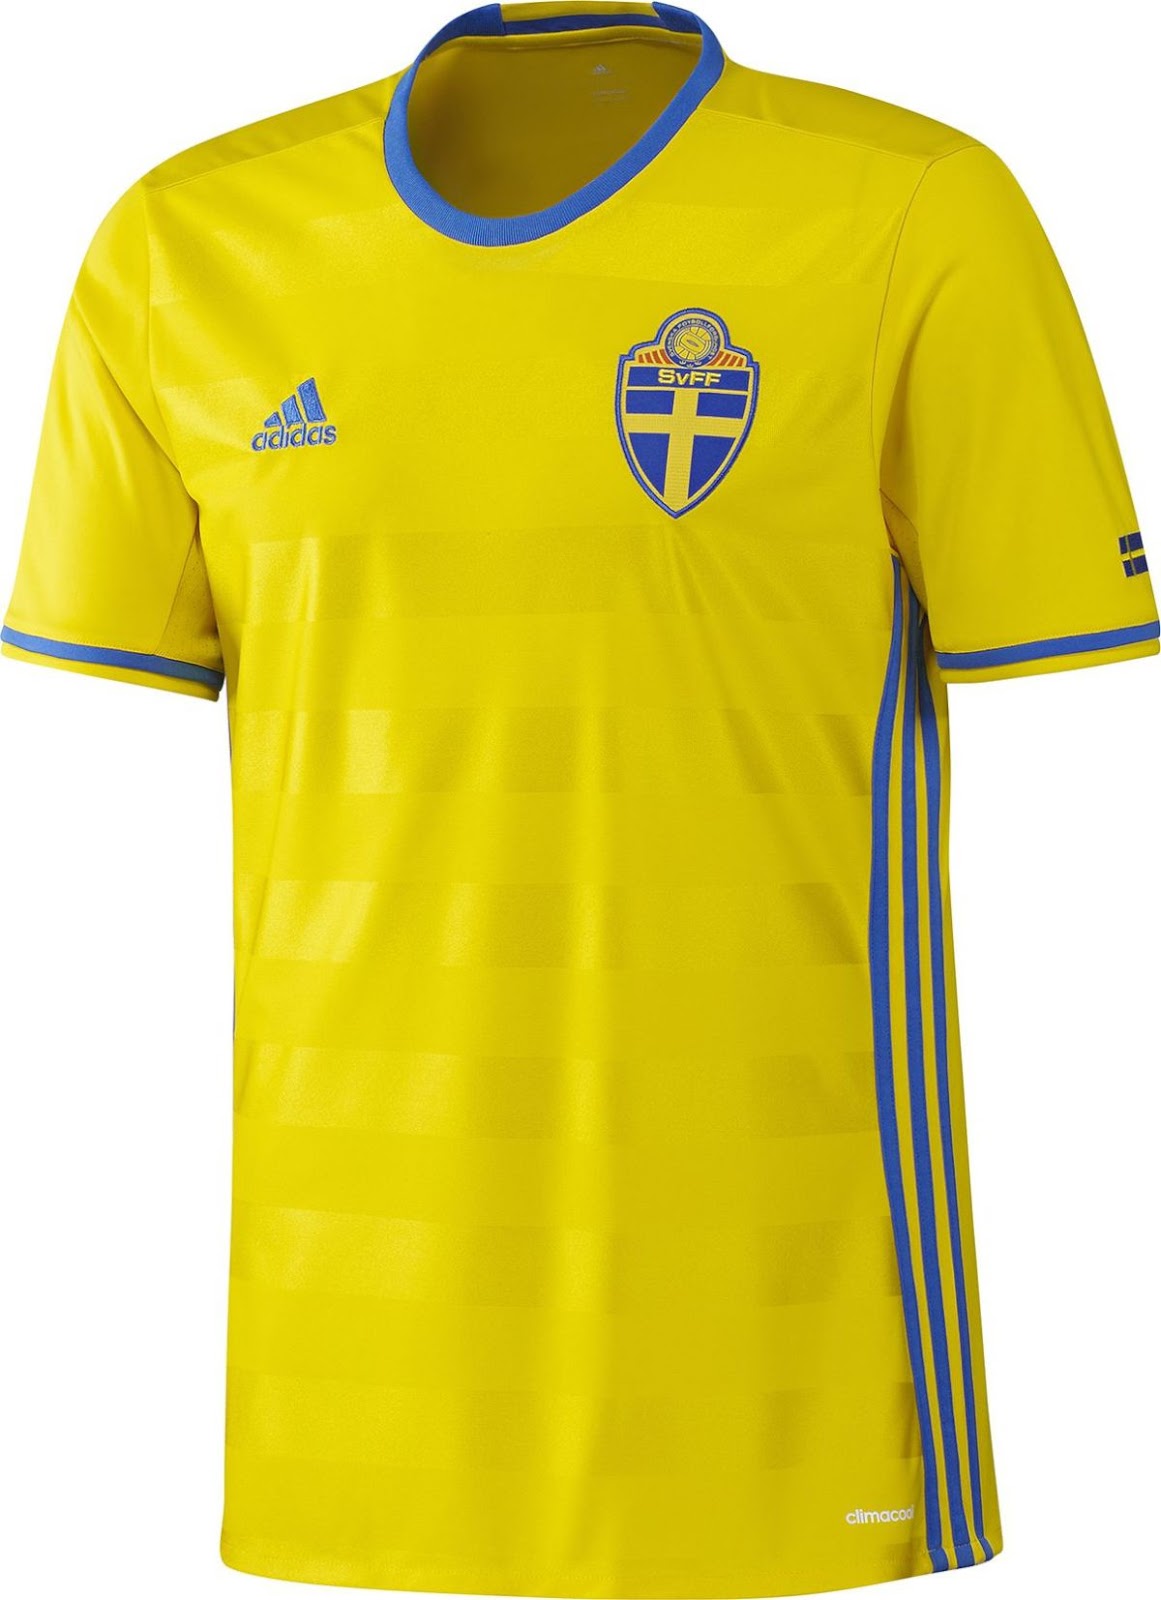 スウェーデン代表 Euro 16 ユニフォーム ユニ11